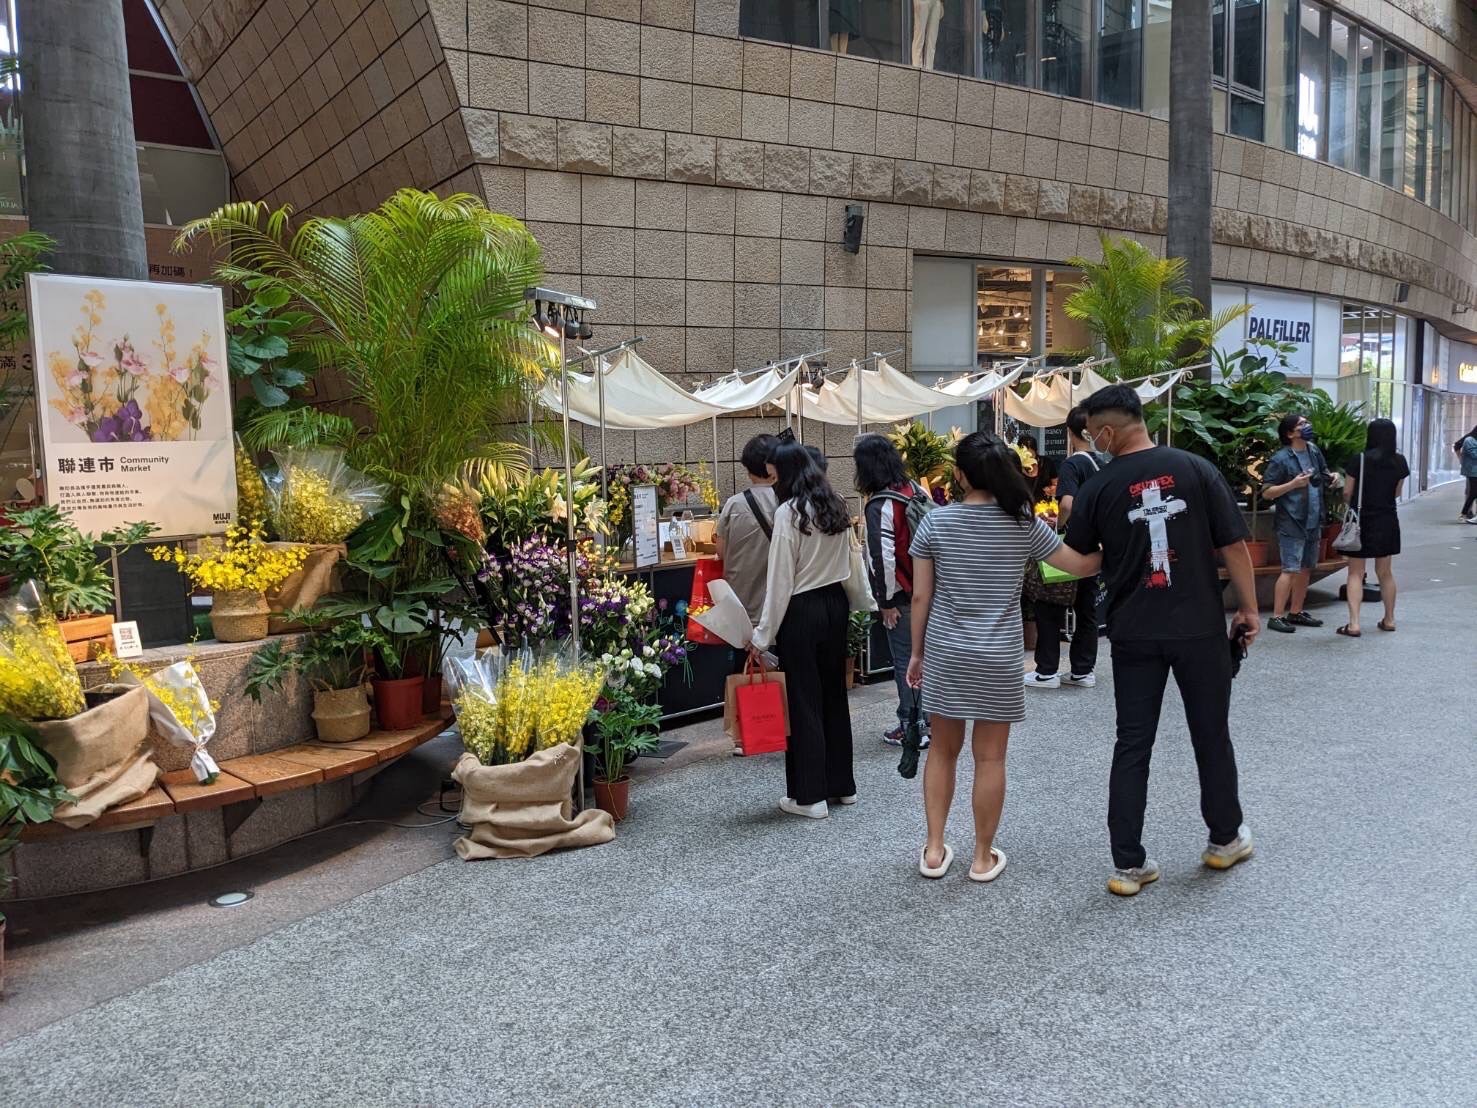 新聞圖片_培訓學員與台灣無印良品合作販售國產花卉--JPG格式